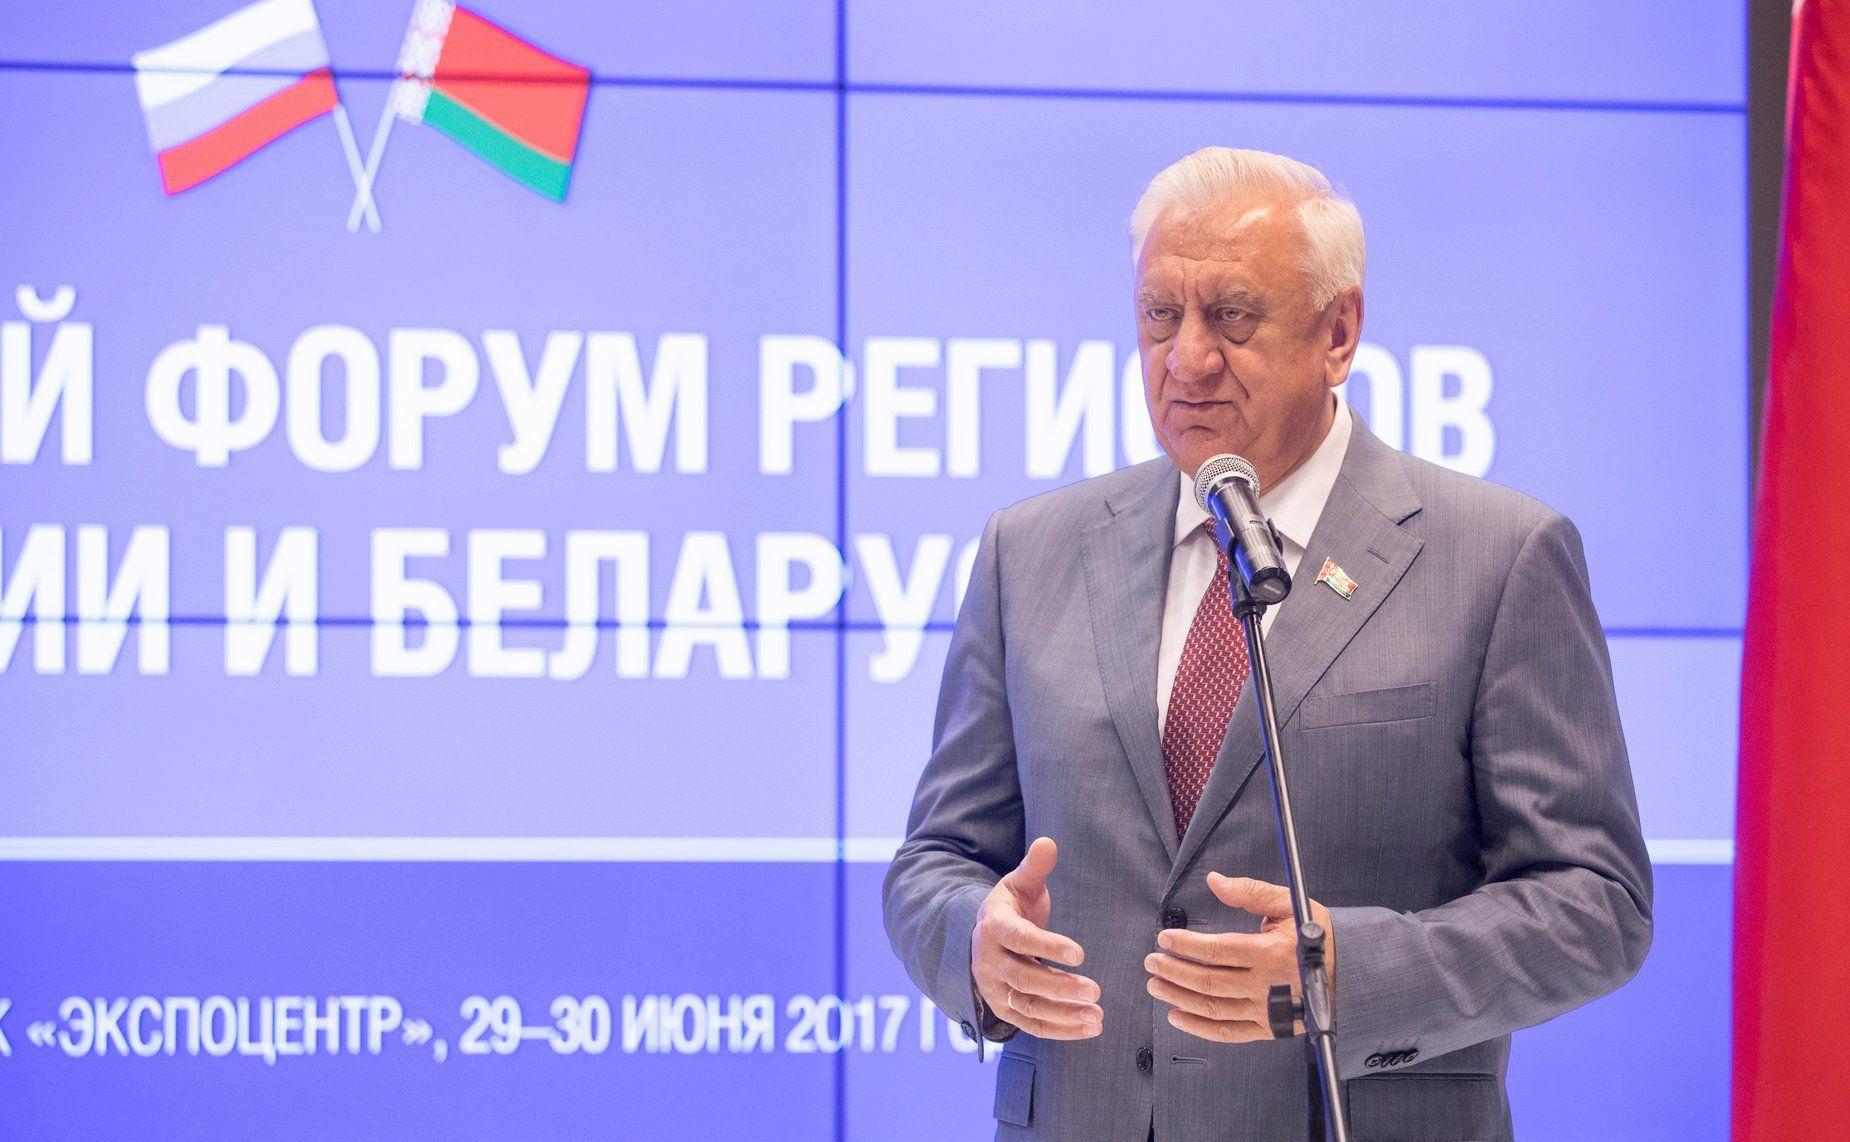 Следующий Форум регионов Беларуси и России пройдет в Могилеве